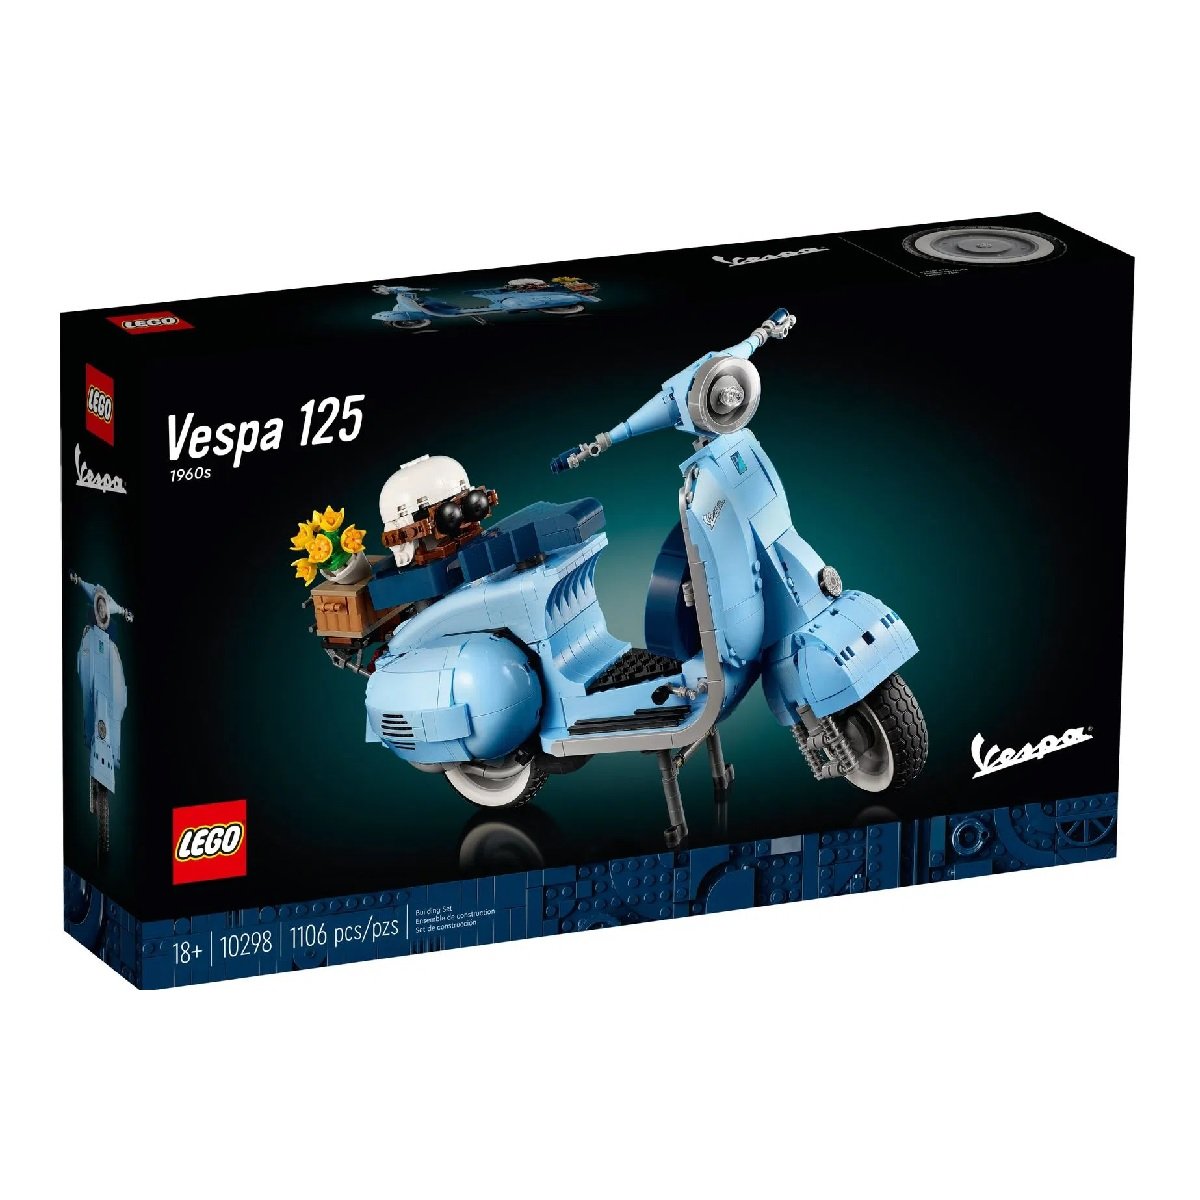 Lego Creator Expert Vespa 125 Azul 1106 Peças 10298 - 1